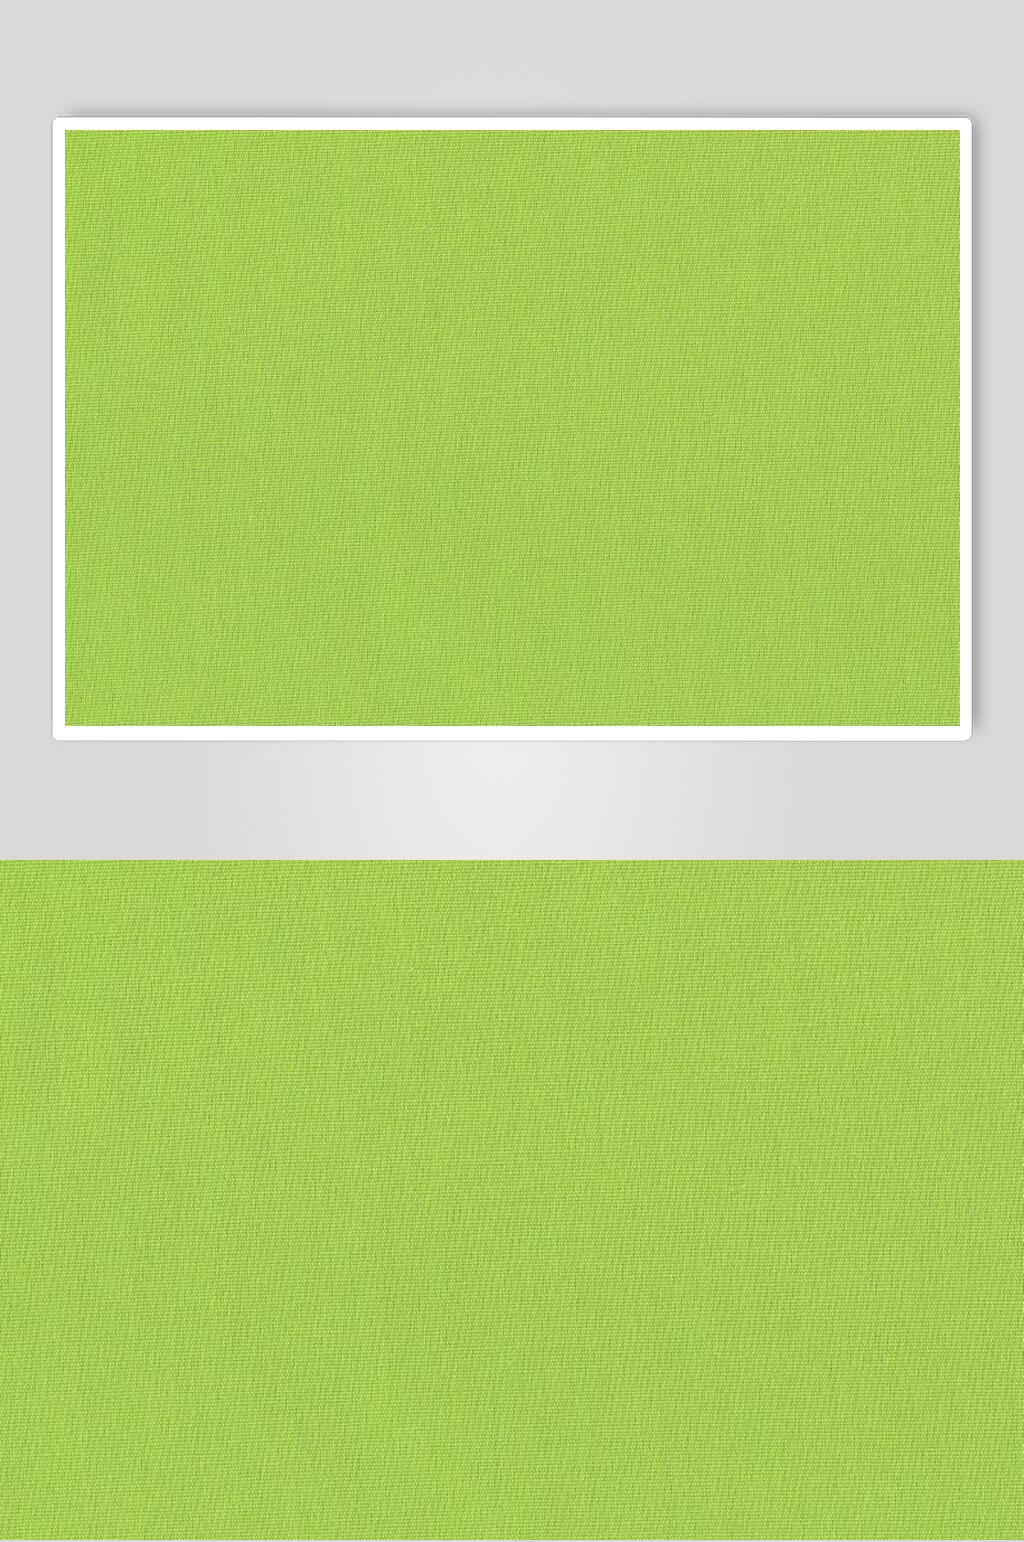 绿色纯色底图微信图片